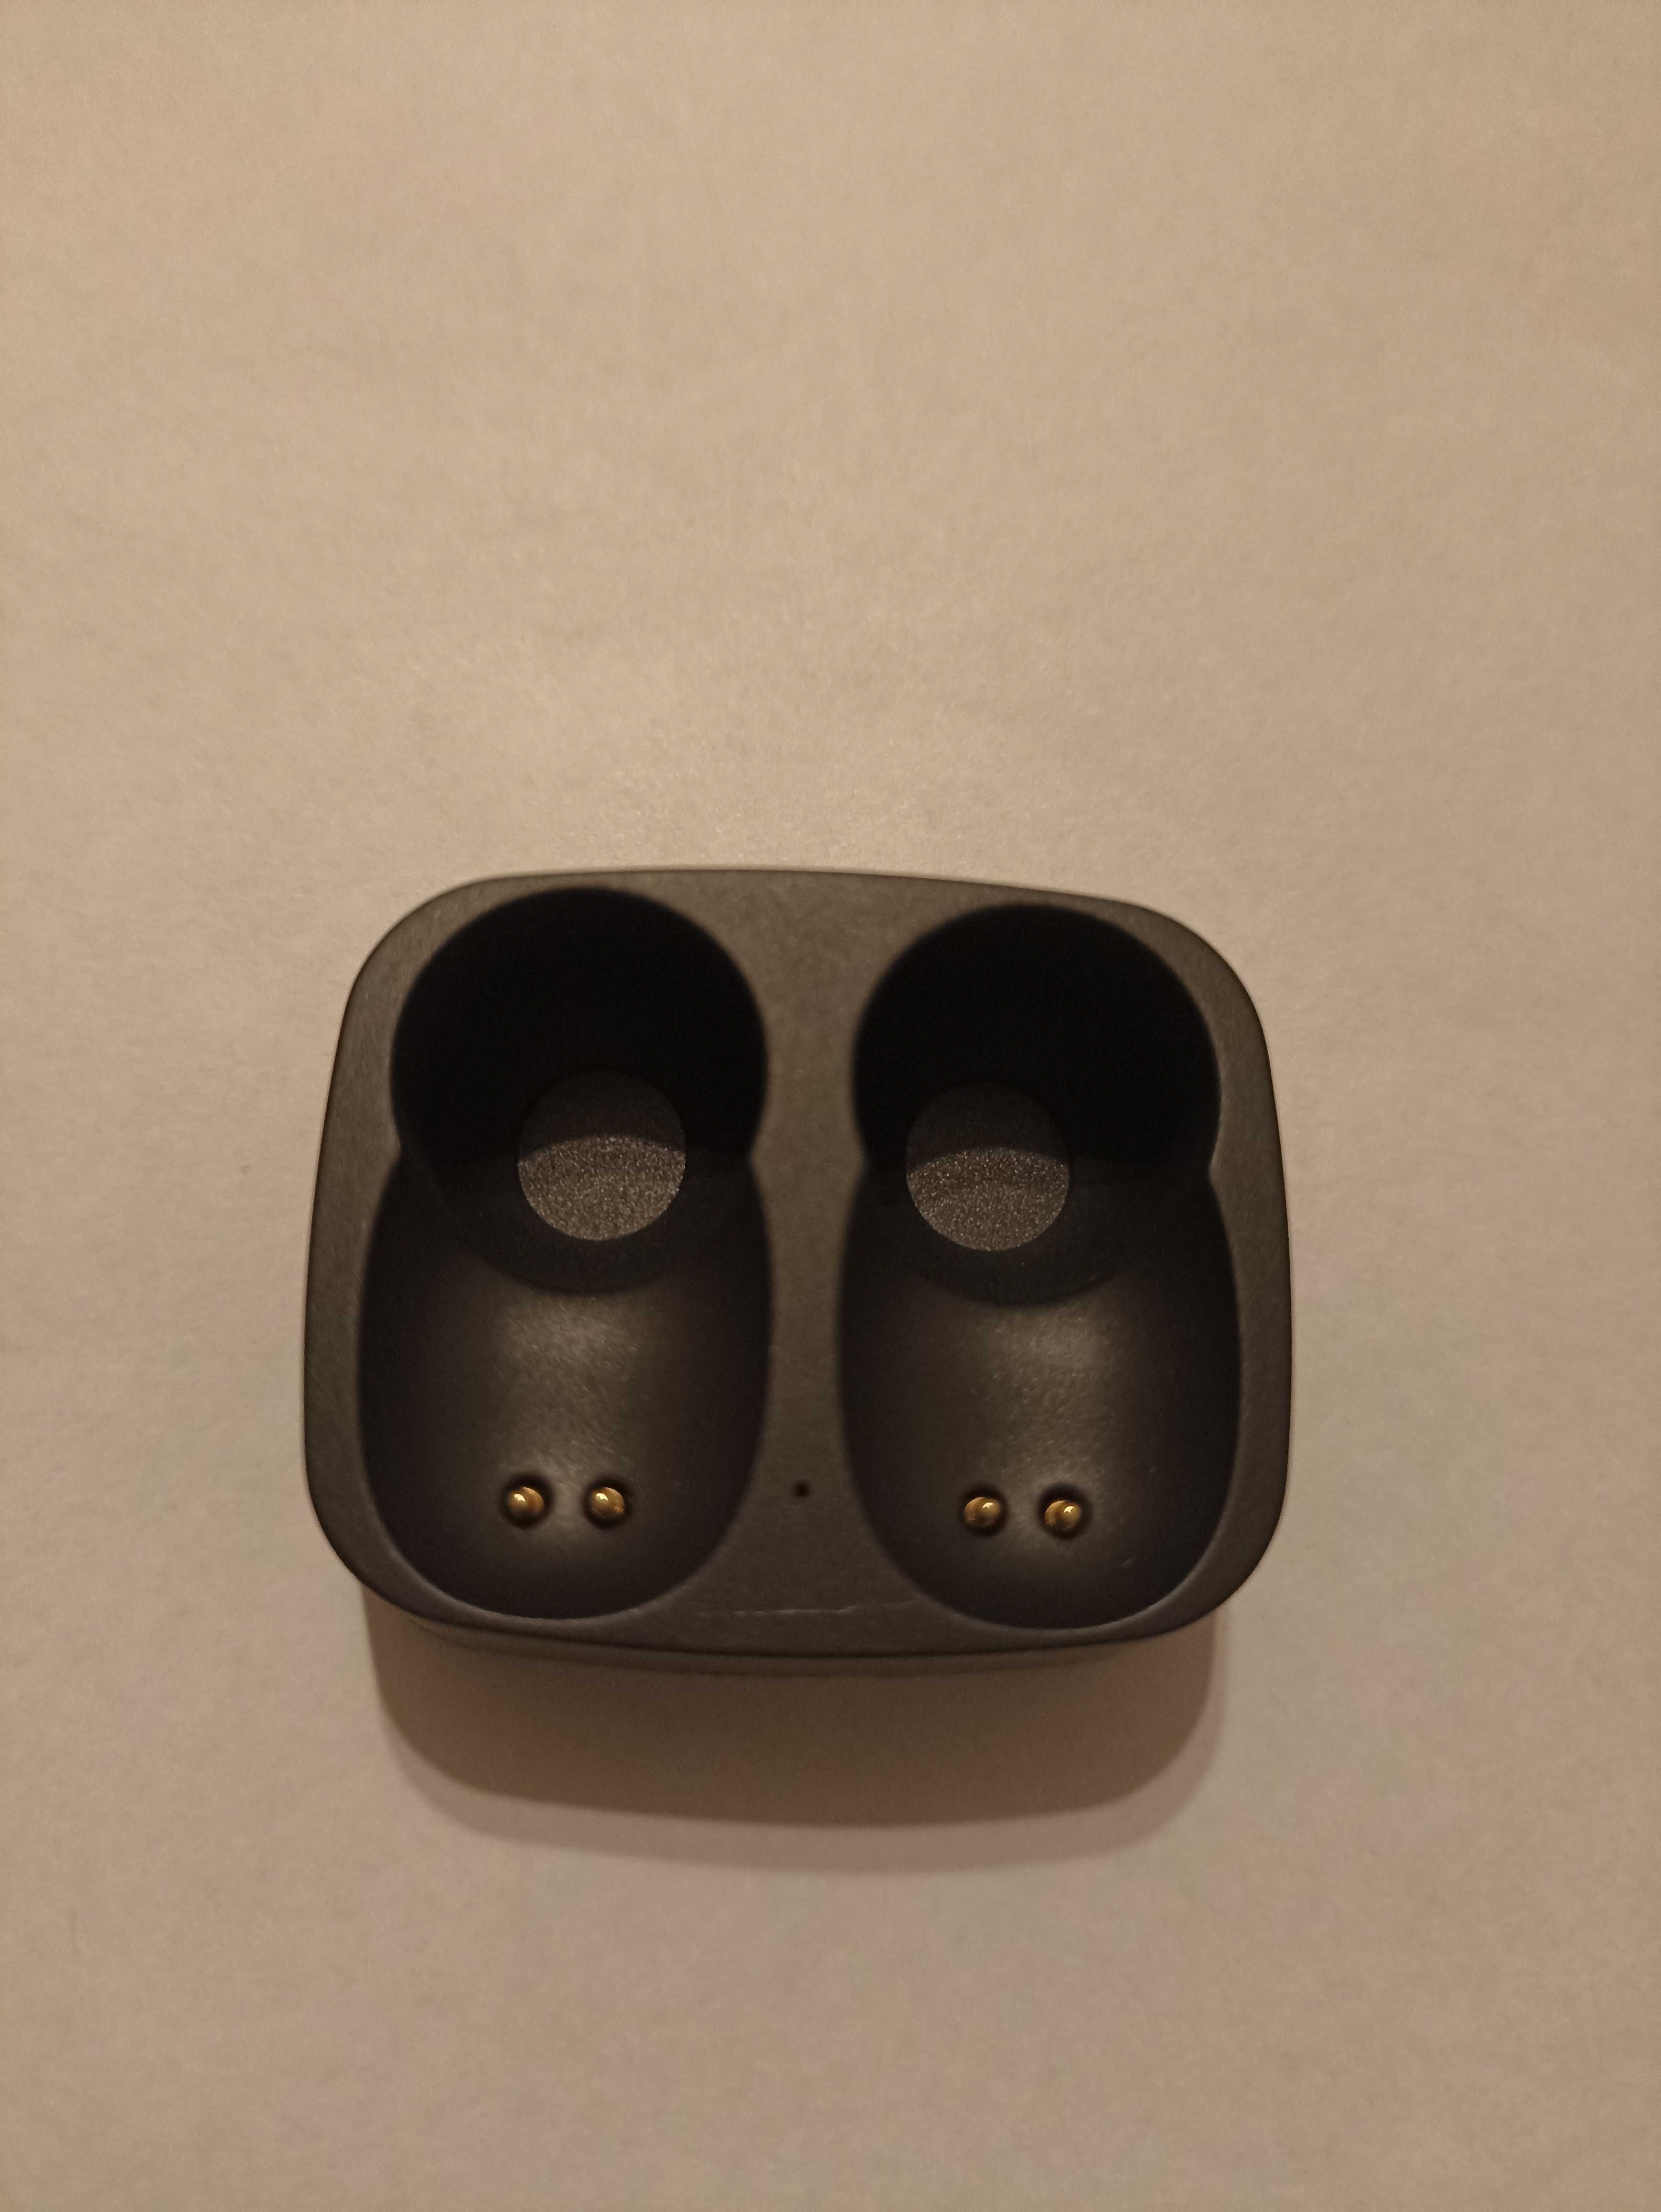 Bezprzewodowy zestaw słuchawkowy Bluetooth